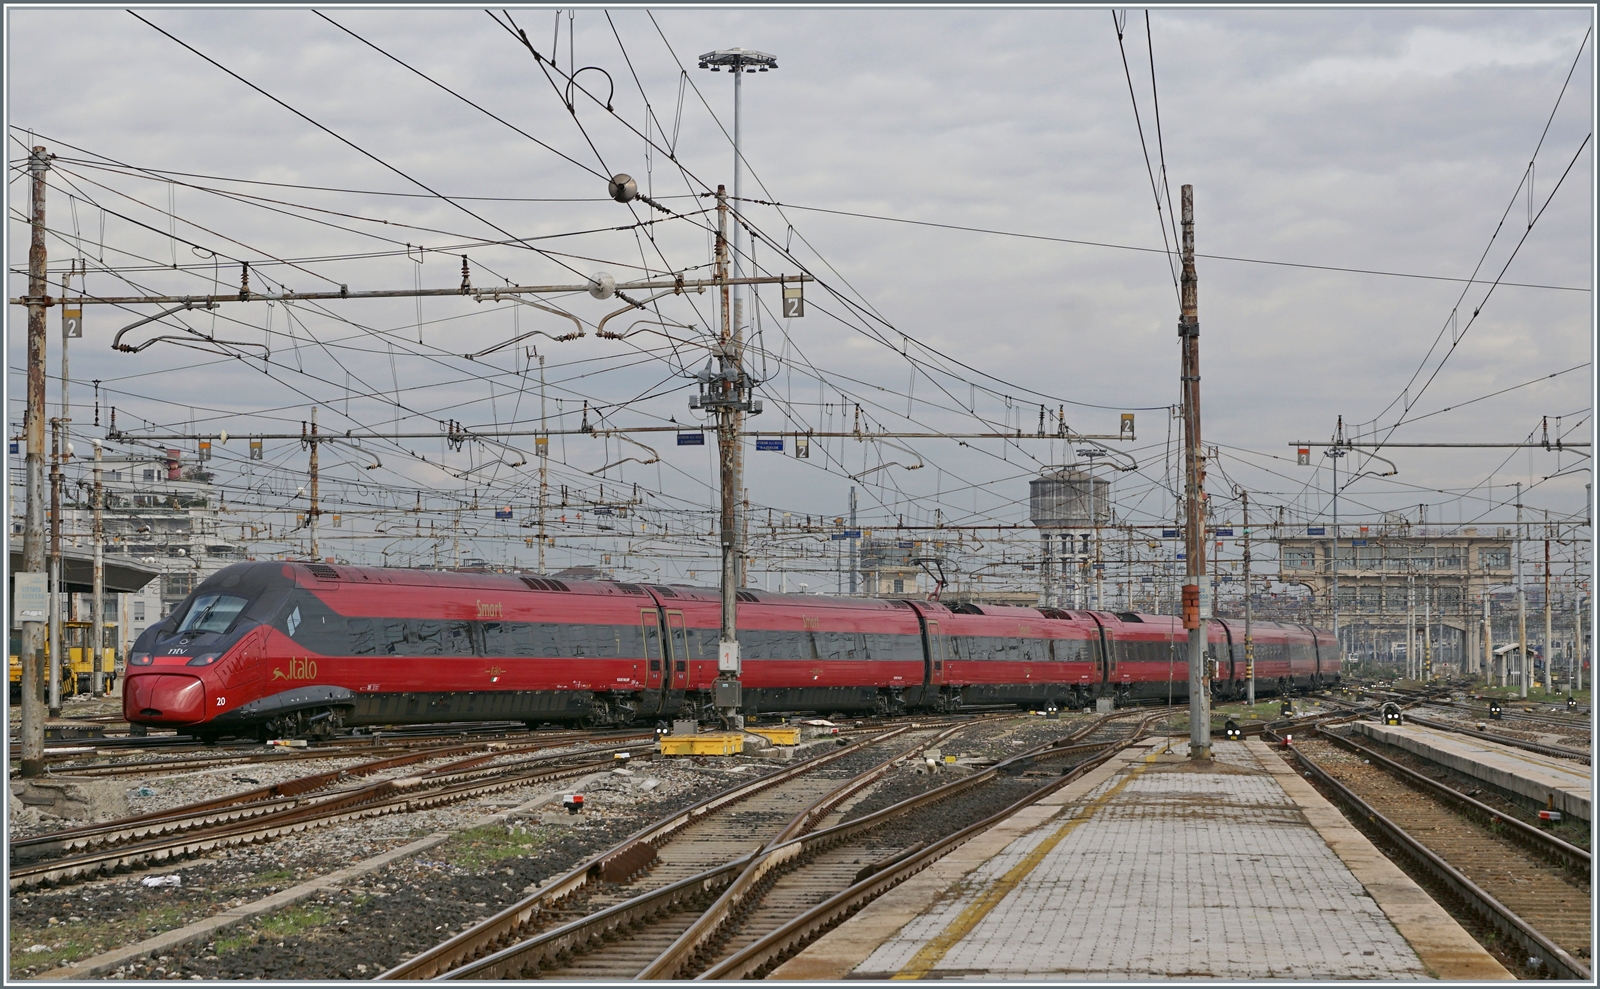 Der von der Formgebung etwas eigenwillige, aber durchaus gefällige .italo NTV EVO ETR 675 020 verlässt den Bahnhof von Milano Centrale. 

8. November 2022